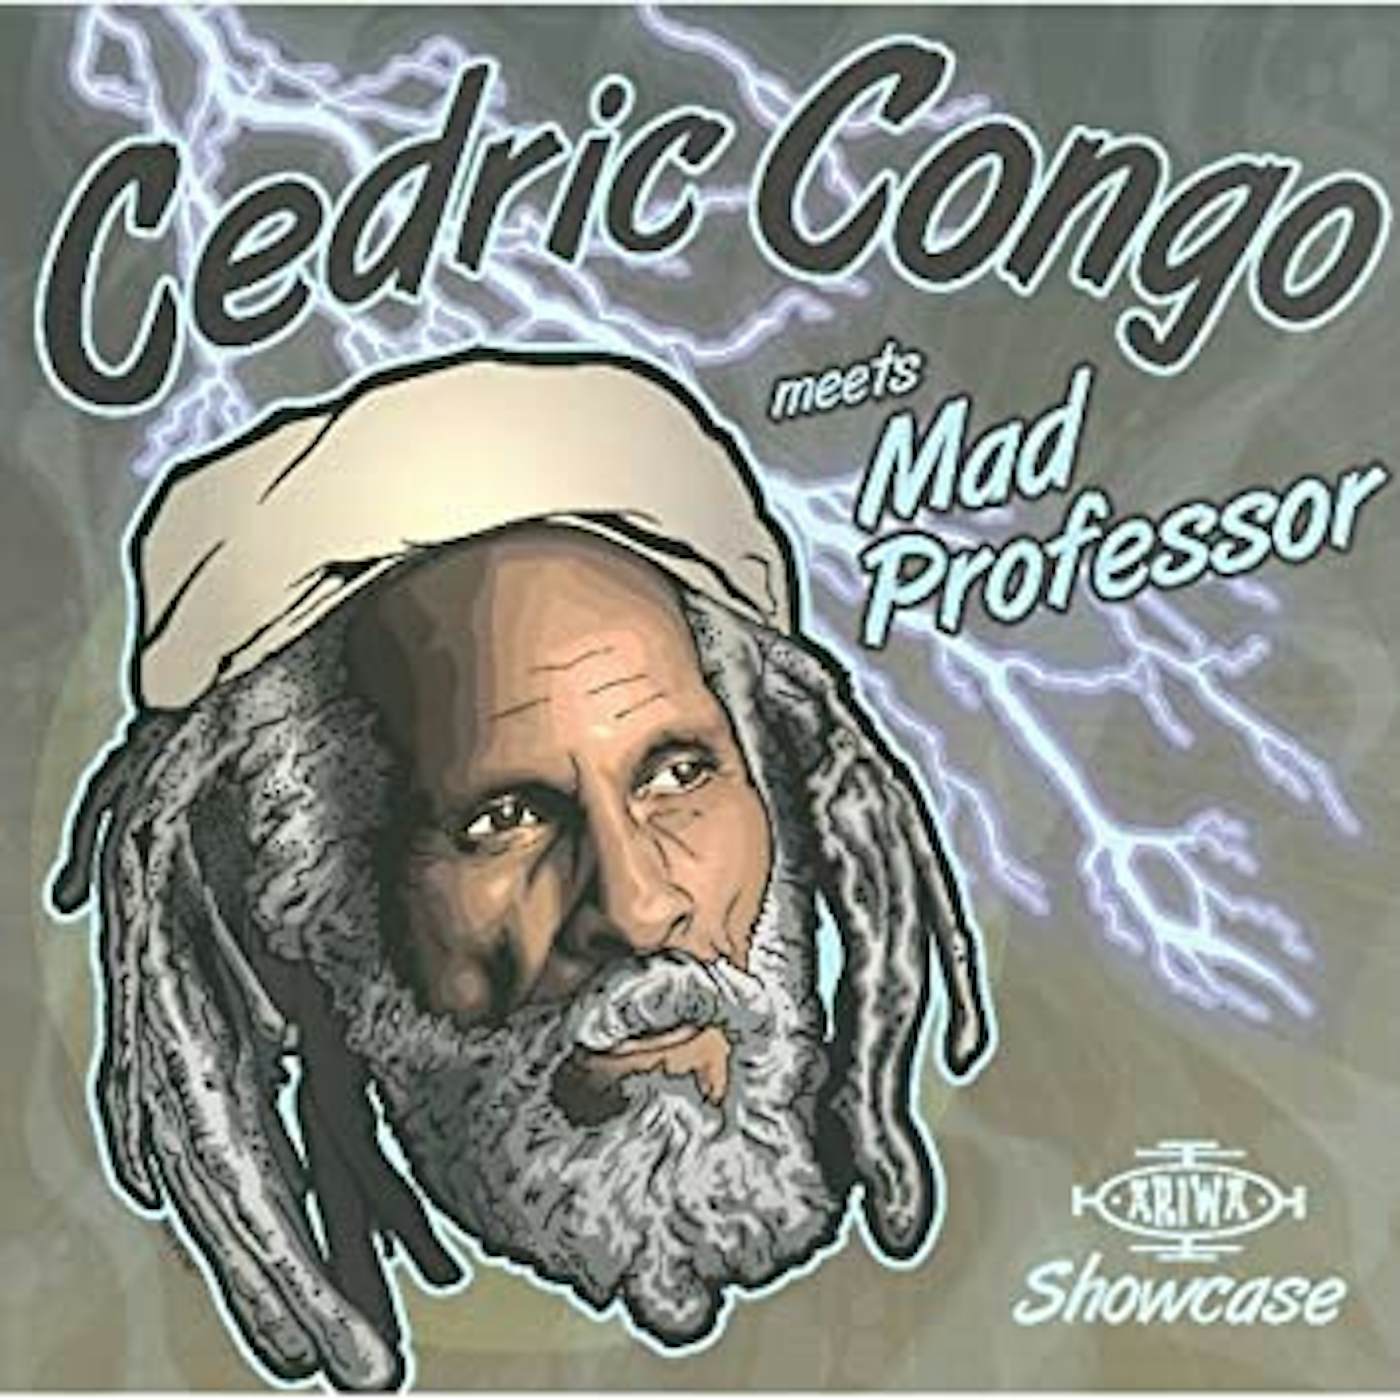 Cedric Congo MEETS MAD PROFESSOR Vinyl Record